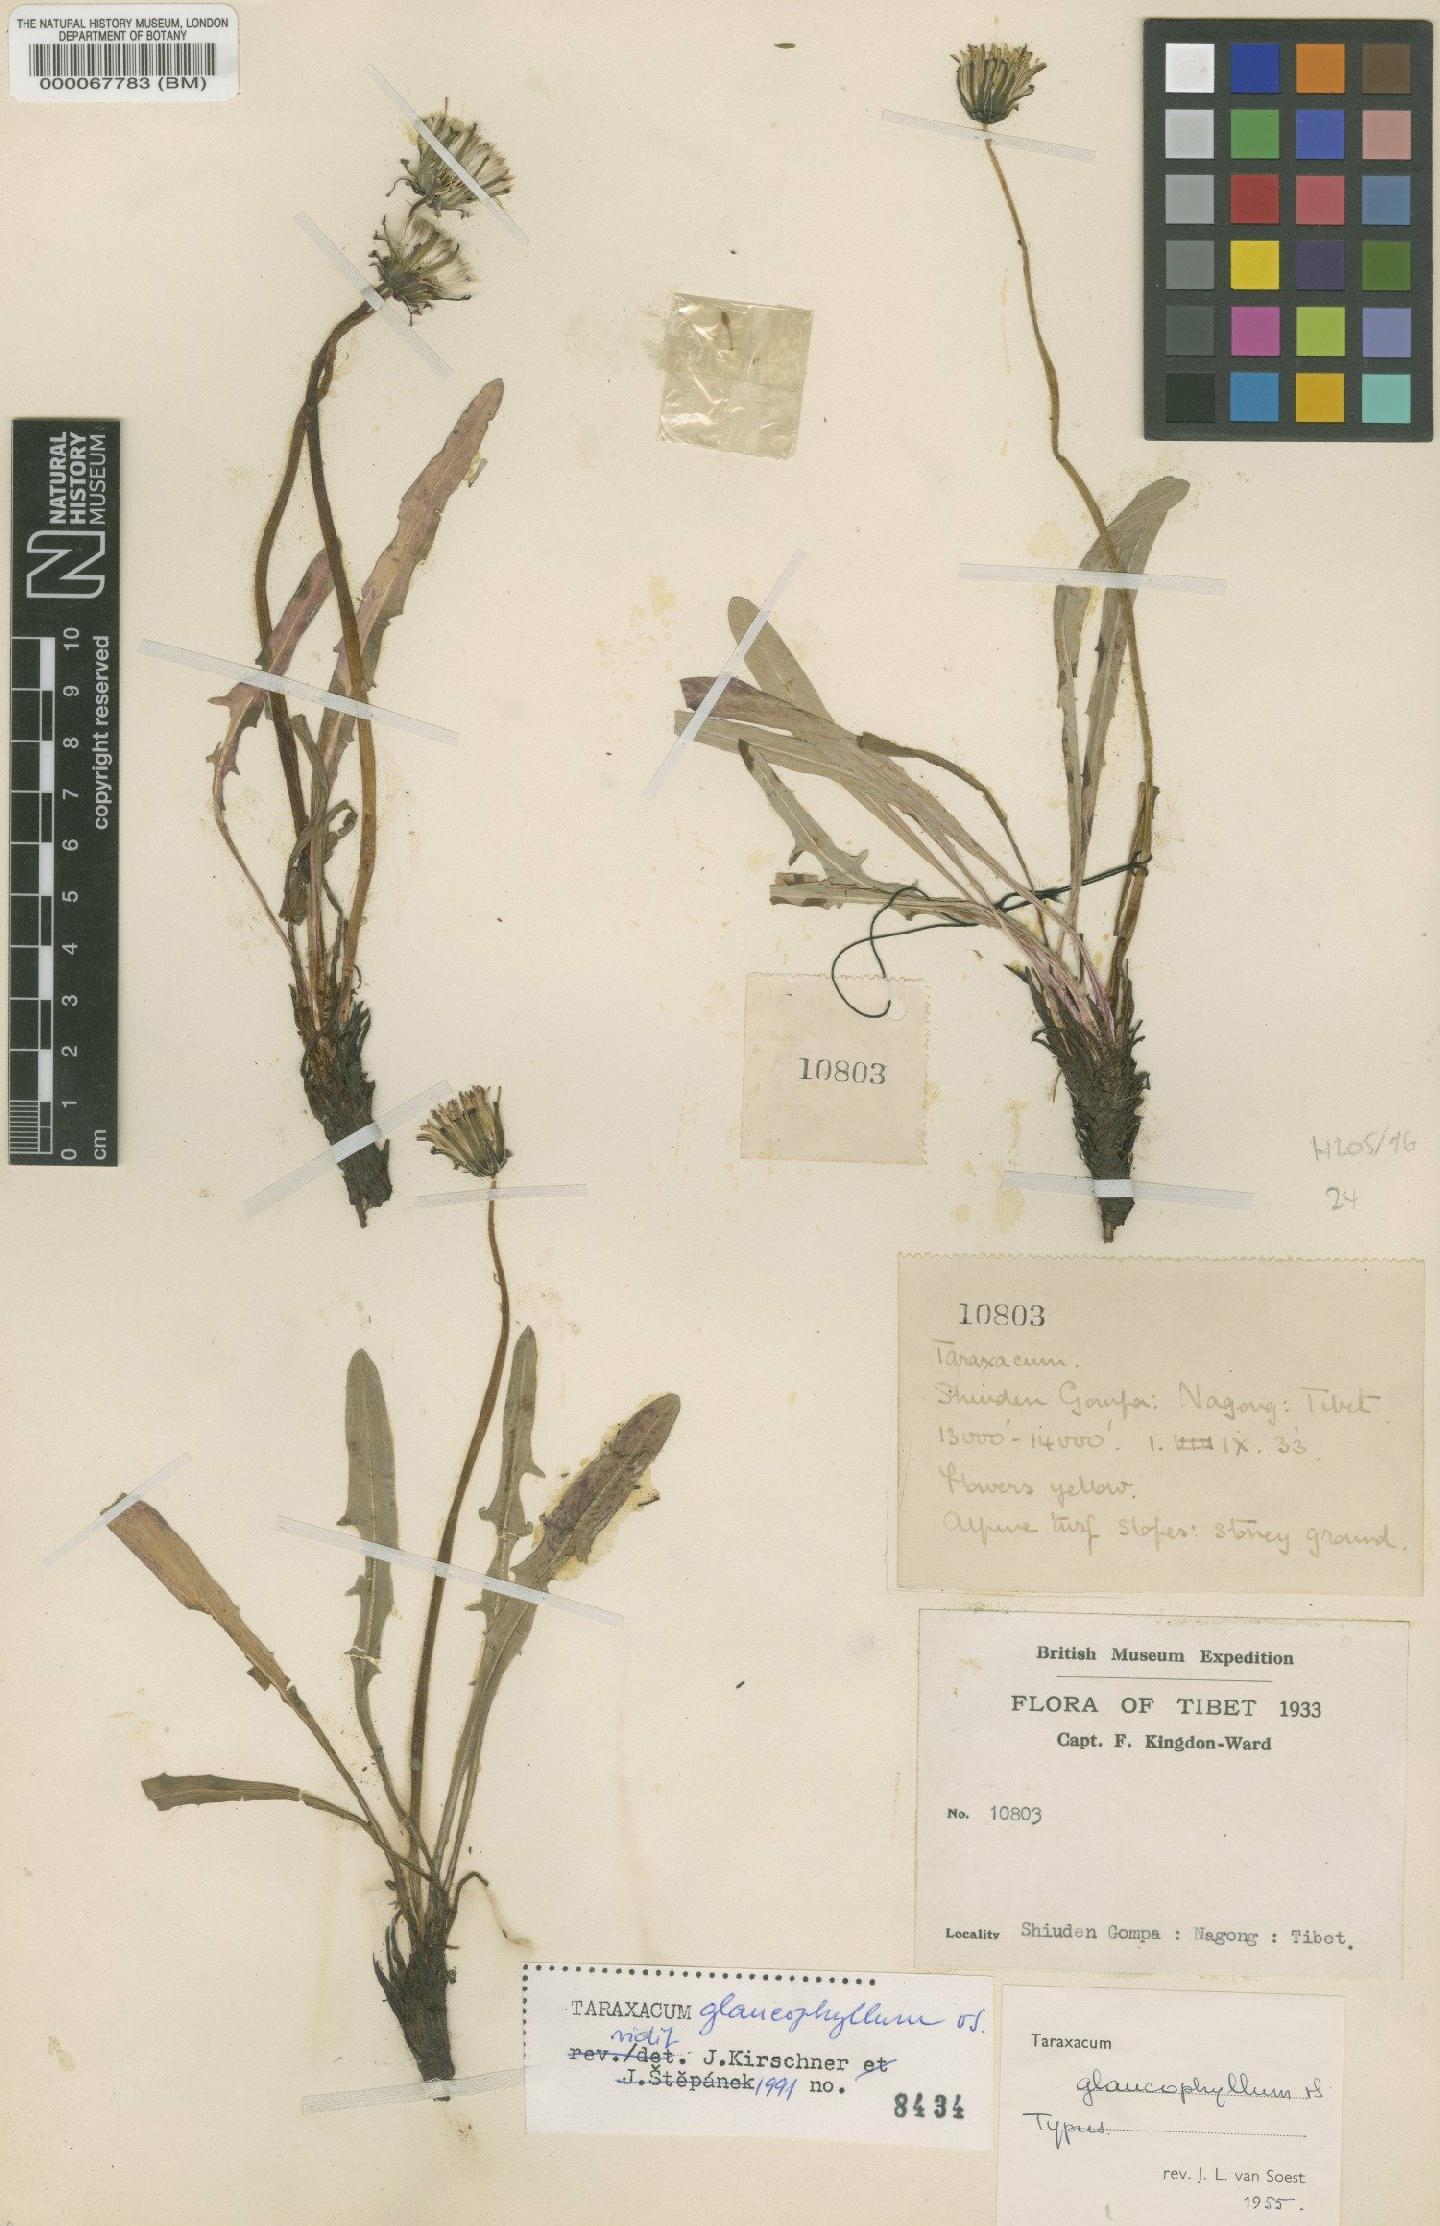 To NHMUK collection (Taraxacum glaucophyllum Soest; Type; NHMUK:ecatalogue:481715)